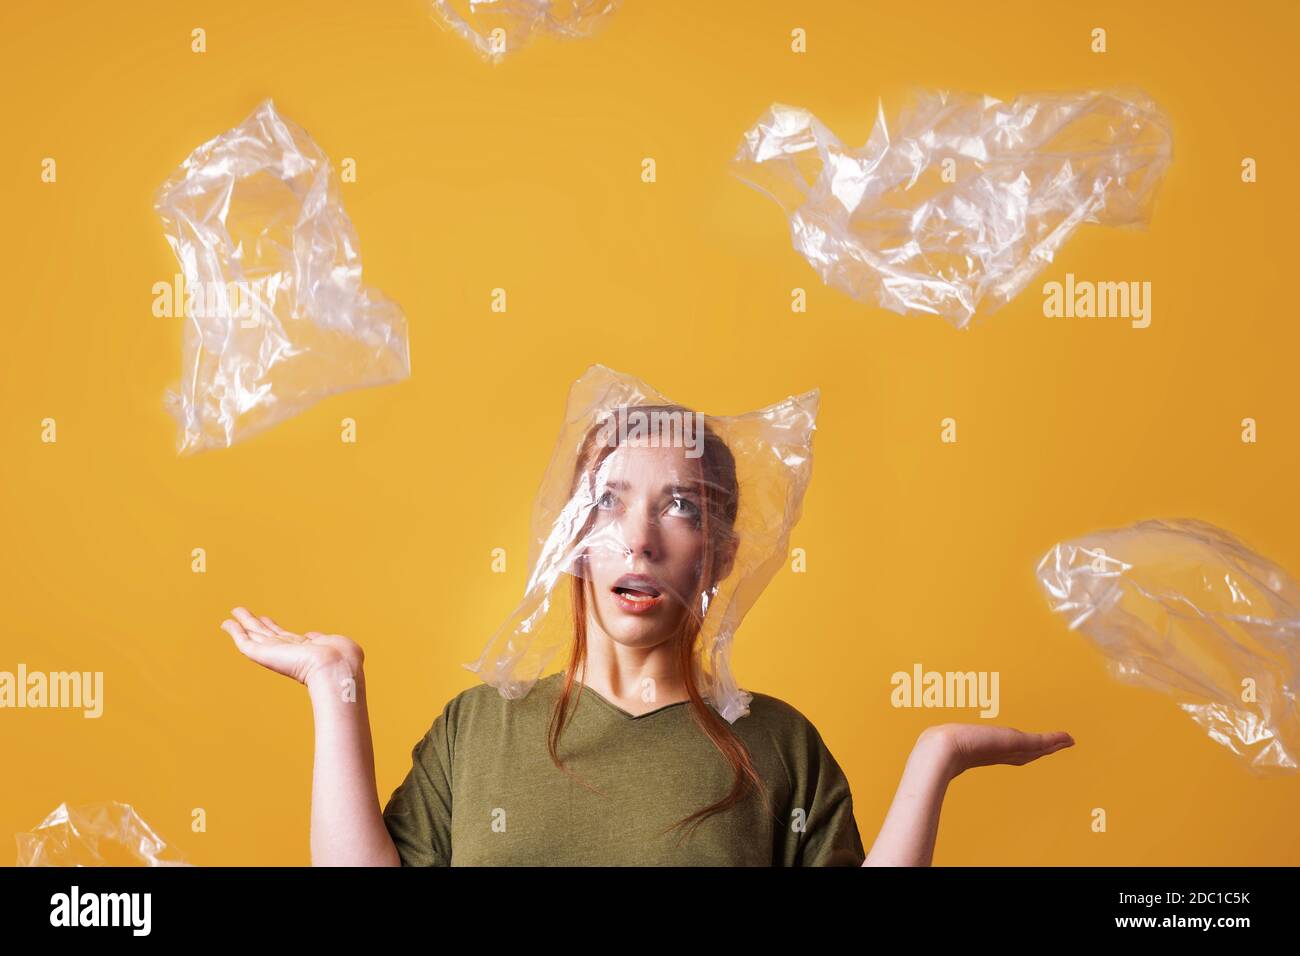 Junge Frau überwältigt von Plastikmüll und erstickt von Plastik Tasche über den Kopf - Ökologie und Umweltverschmutzung Konzept Stockfoto